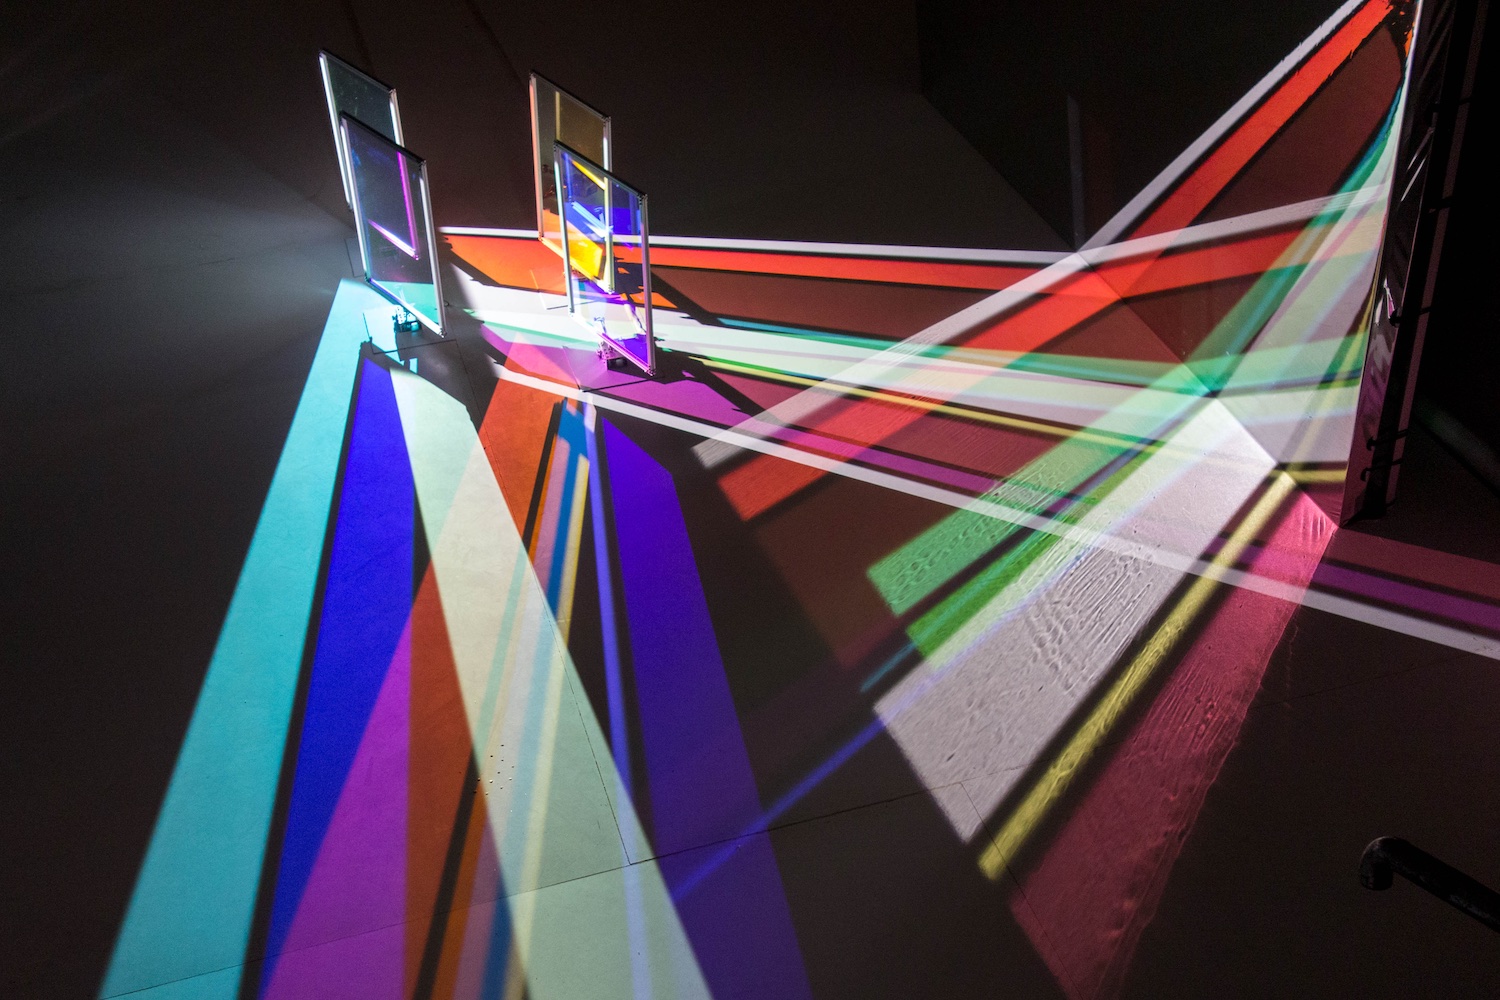 La lumineuse et curieuse installation Saiyah #2.9 de Yoko Seyama joue avec les couleurs émanant de la lumière blanche réfléchie par des miroirs